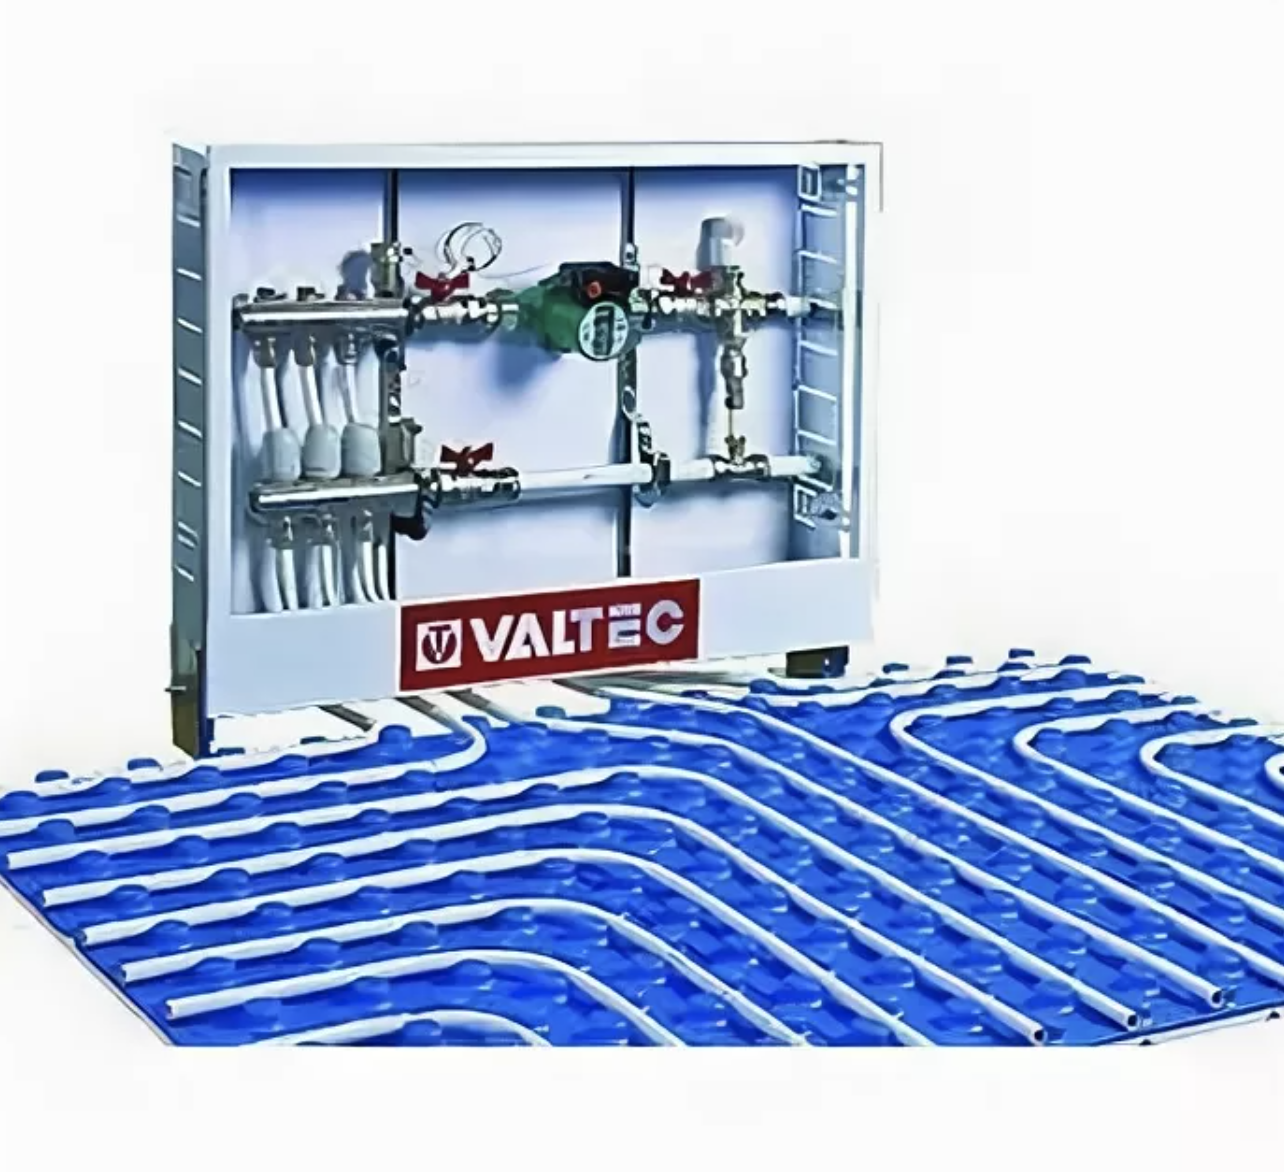 Теплый пол valtec: инструкция и устройство системы, узлы для теплоизоляции, отзывы о комплекте